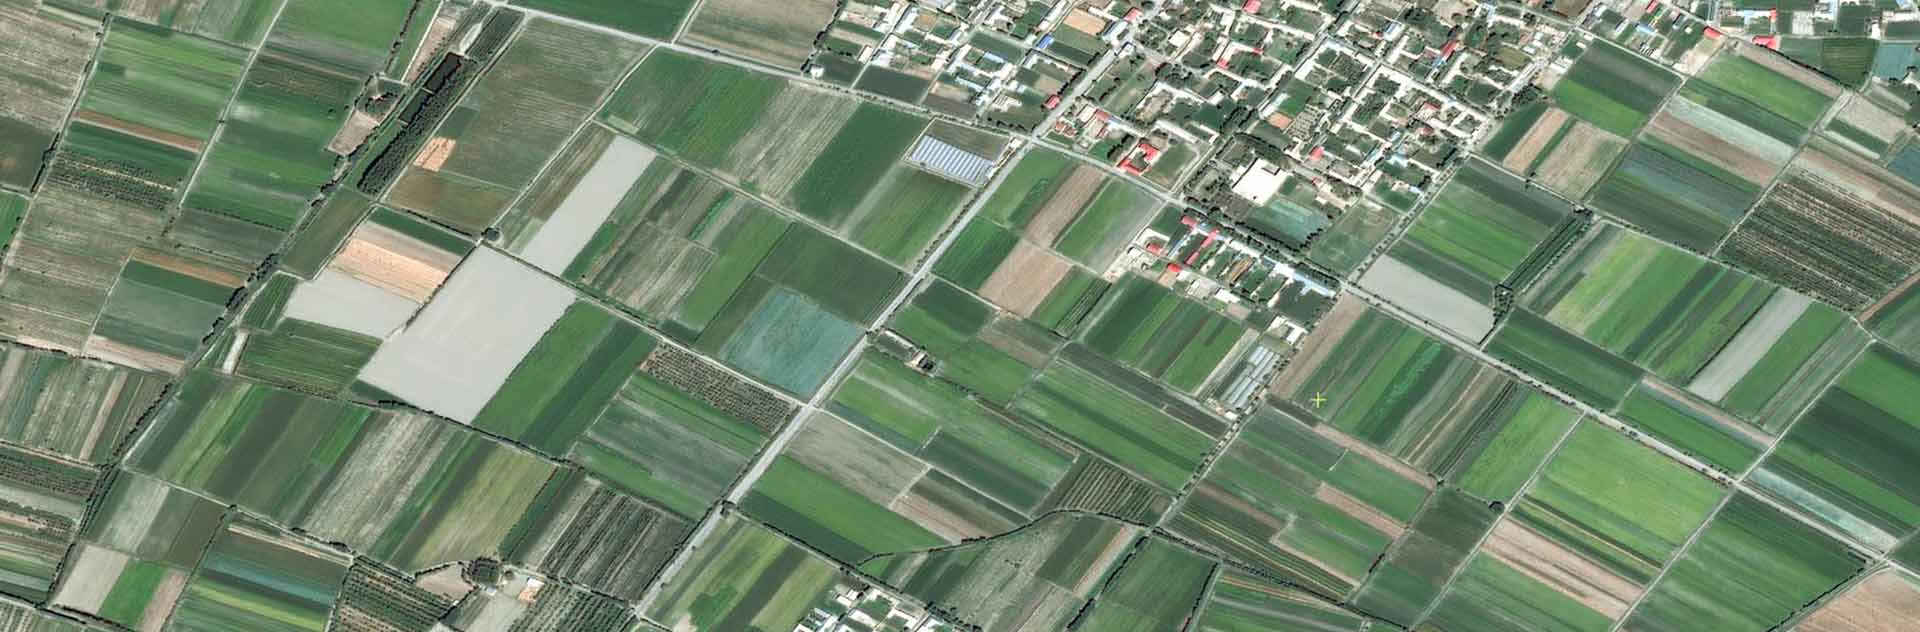 Satellite view of agricultural fields in Samarkand region, Uzbekistan